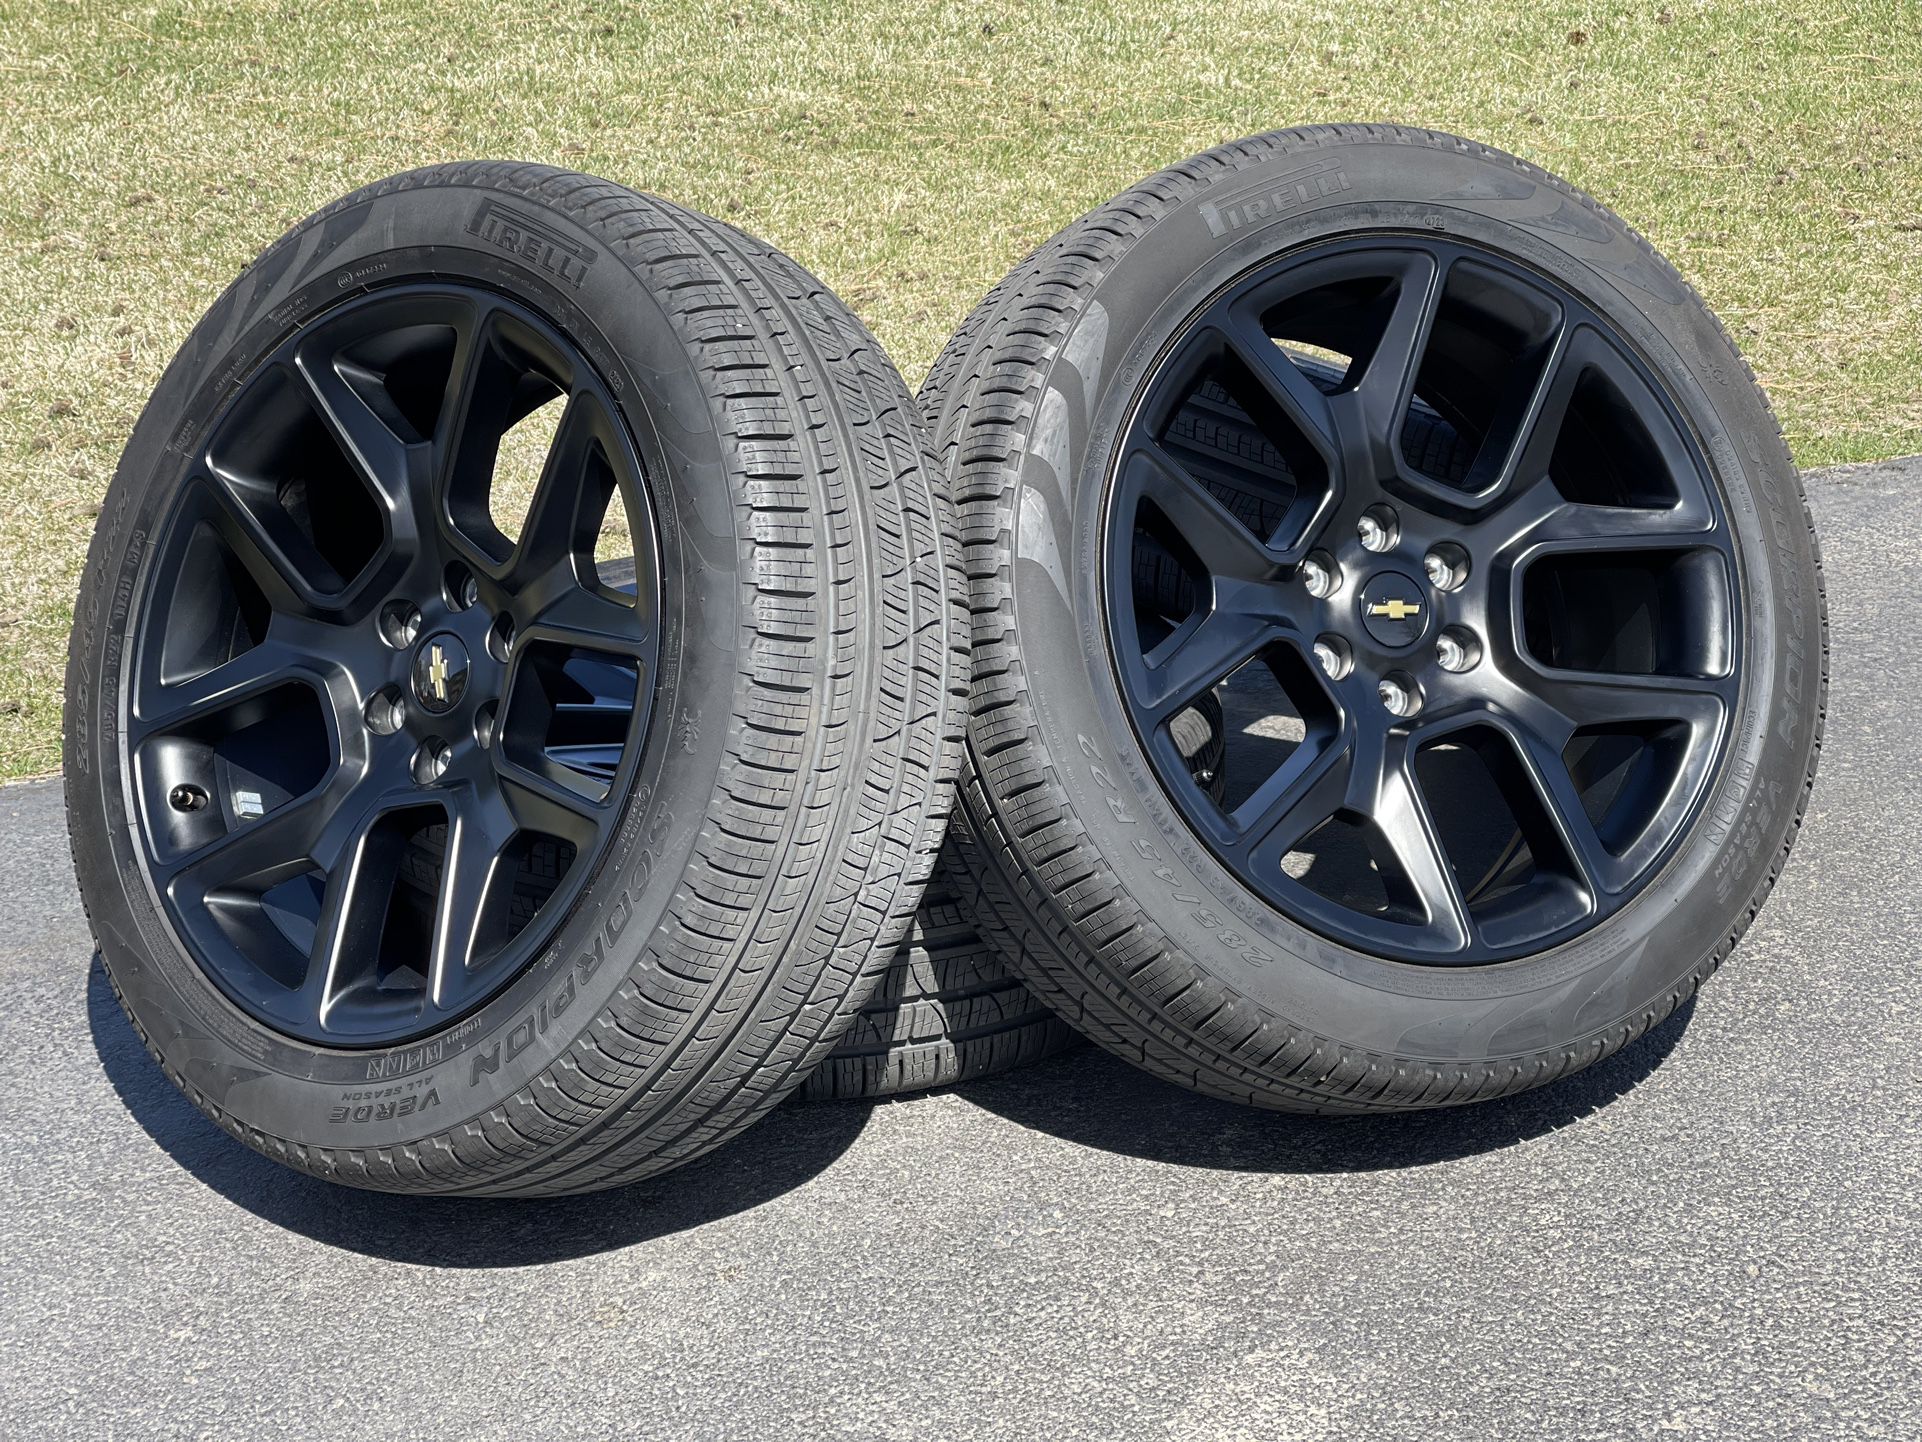 Like New 22” Chevy Silverado GMC Sierra wheels 6 lug rims Tahoe Suburban Denali Yukon Tires Escalade